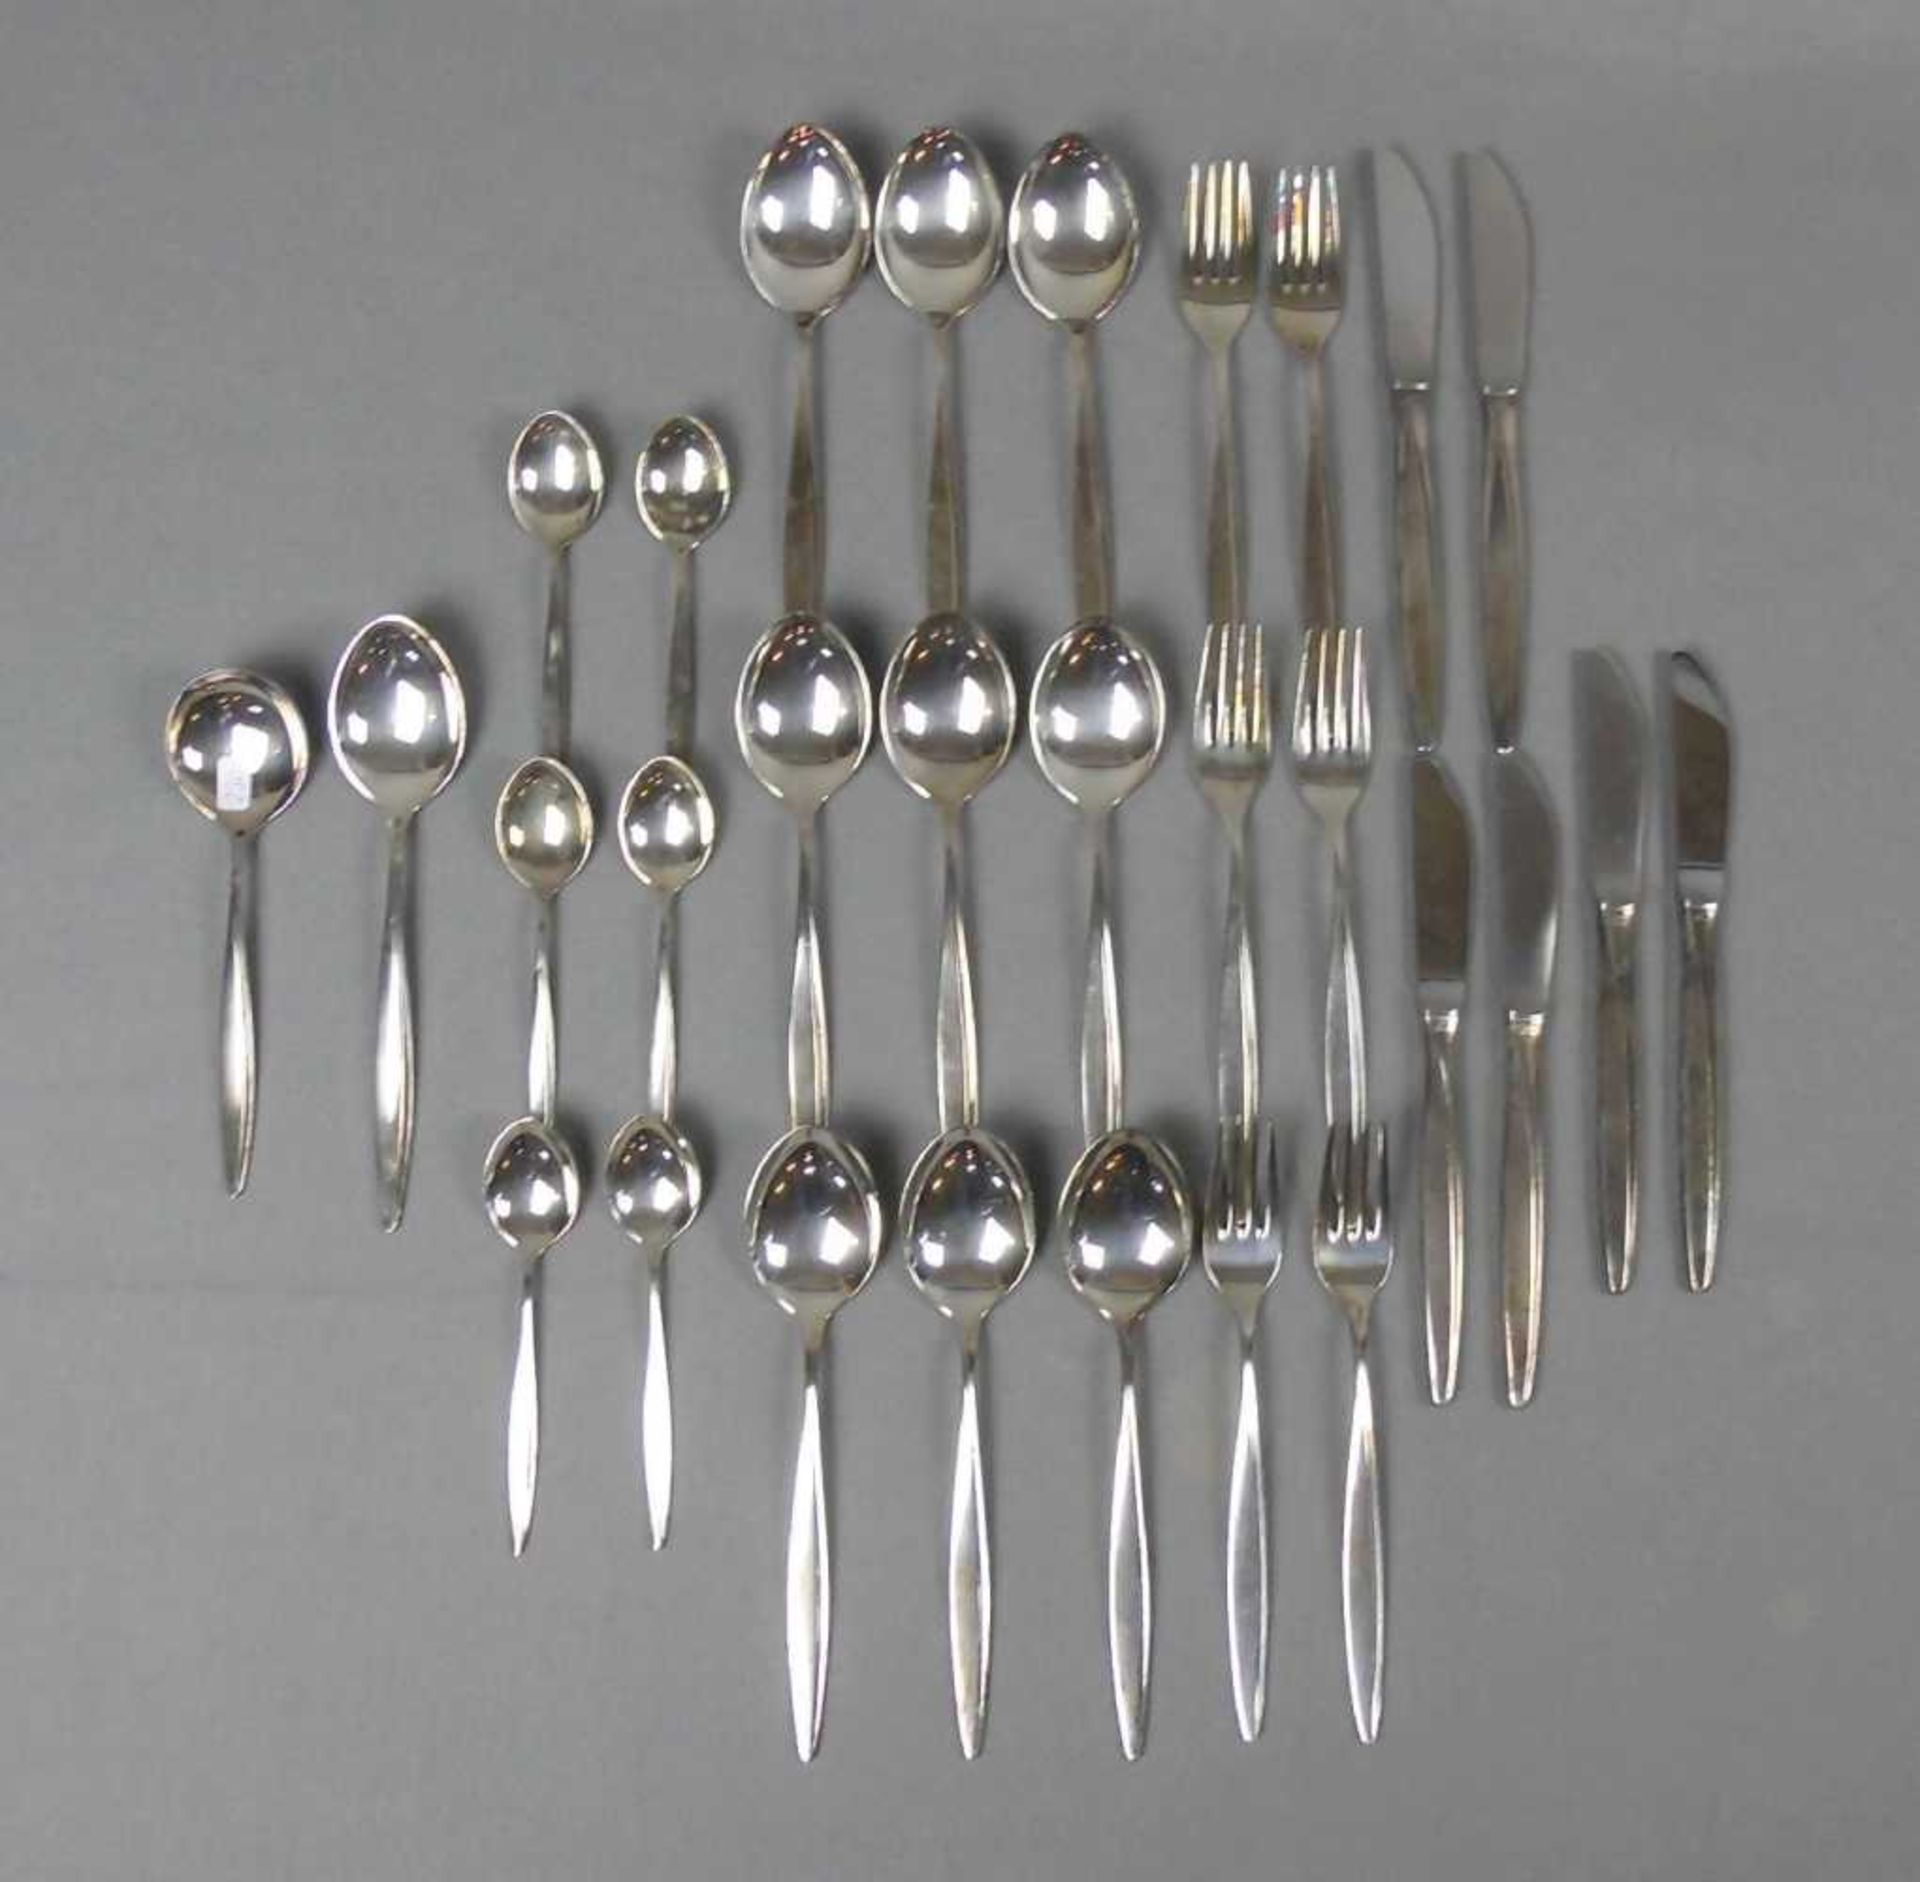 SPEISE - BESTECK / cutlery, WMF, 800er Silber (Gewicht ohne Messer: 1173 g, mit Messer: 1481 g).